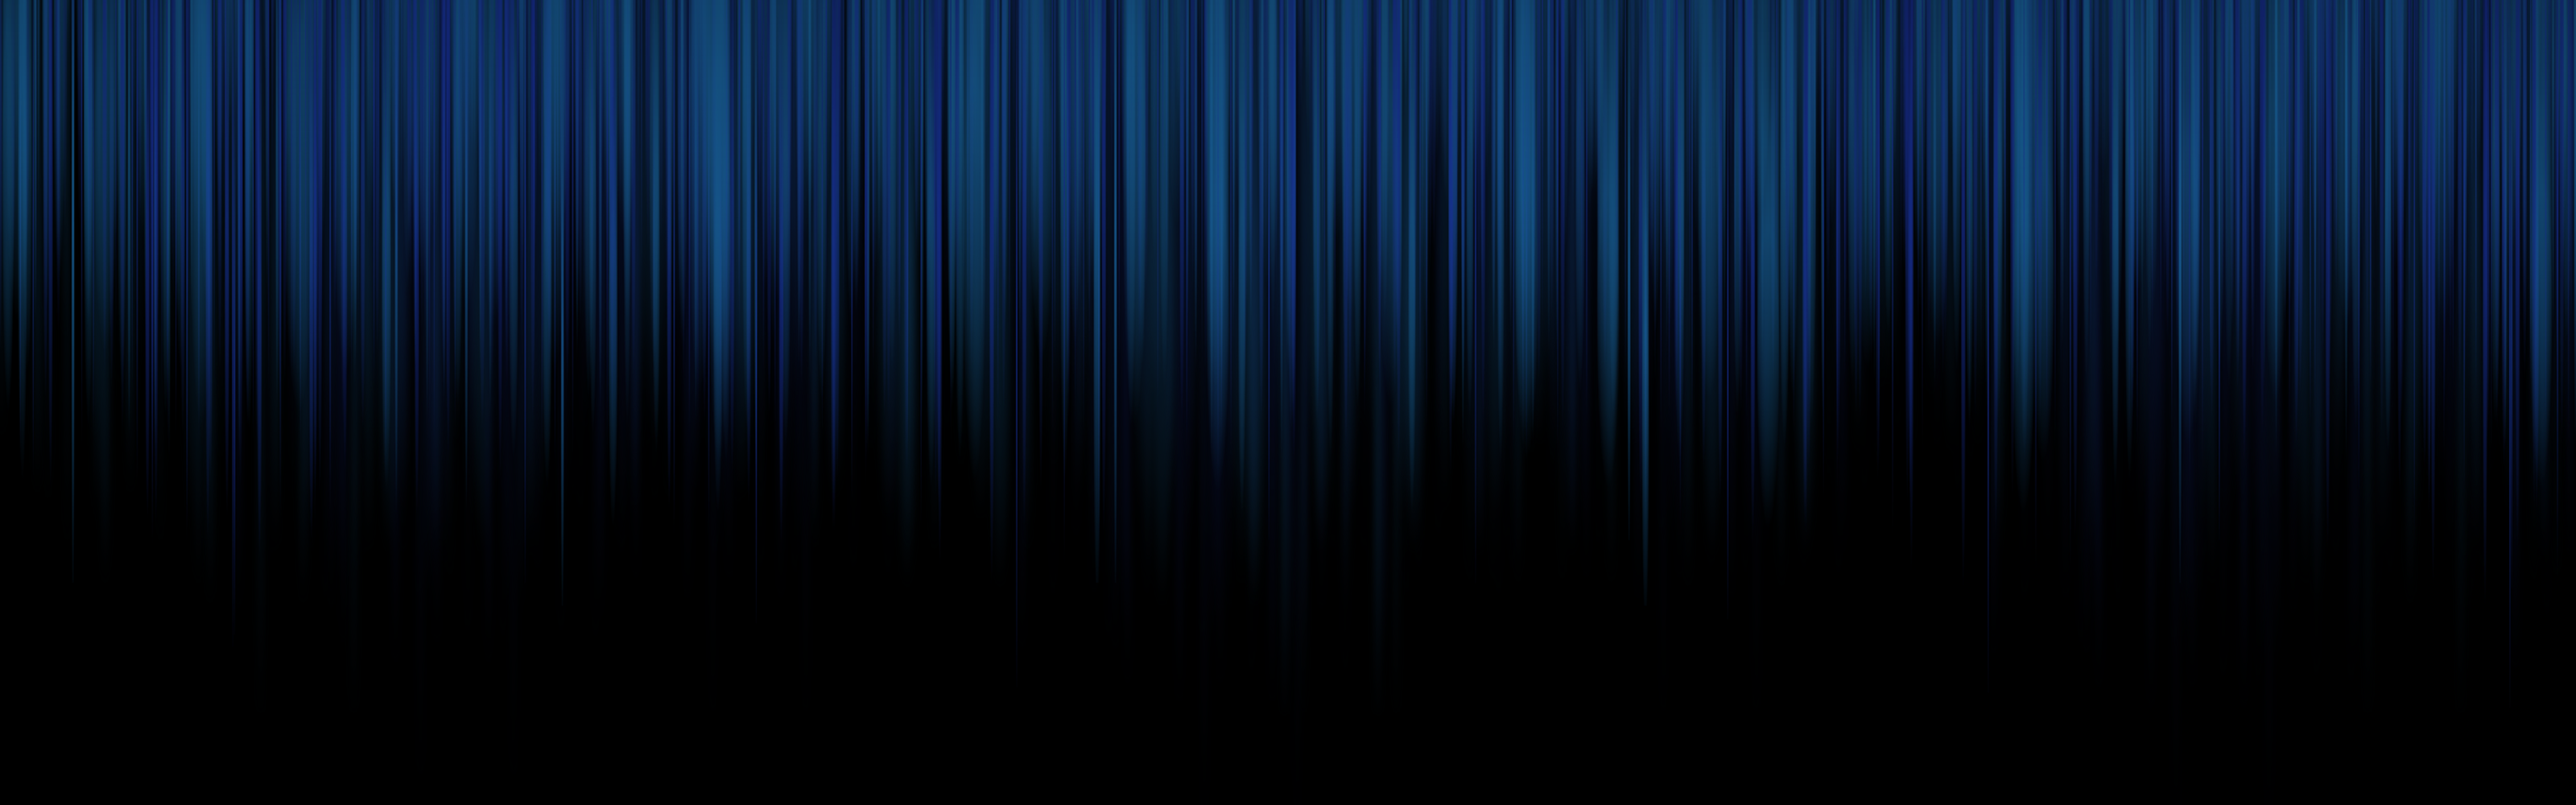 fondo de pantalla de 3200 x 900,azul,negro,azul eléctrico,azul cobalto,ligero